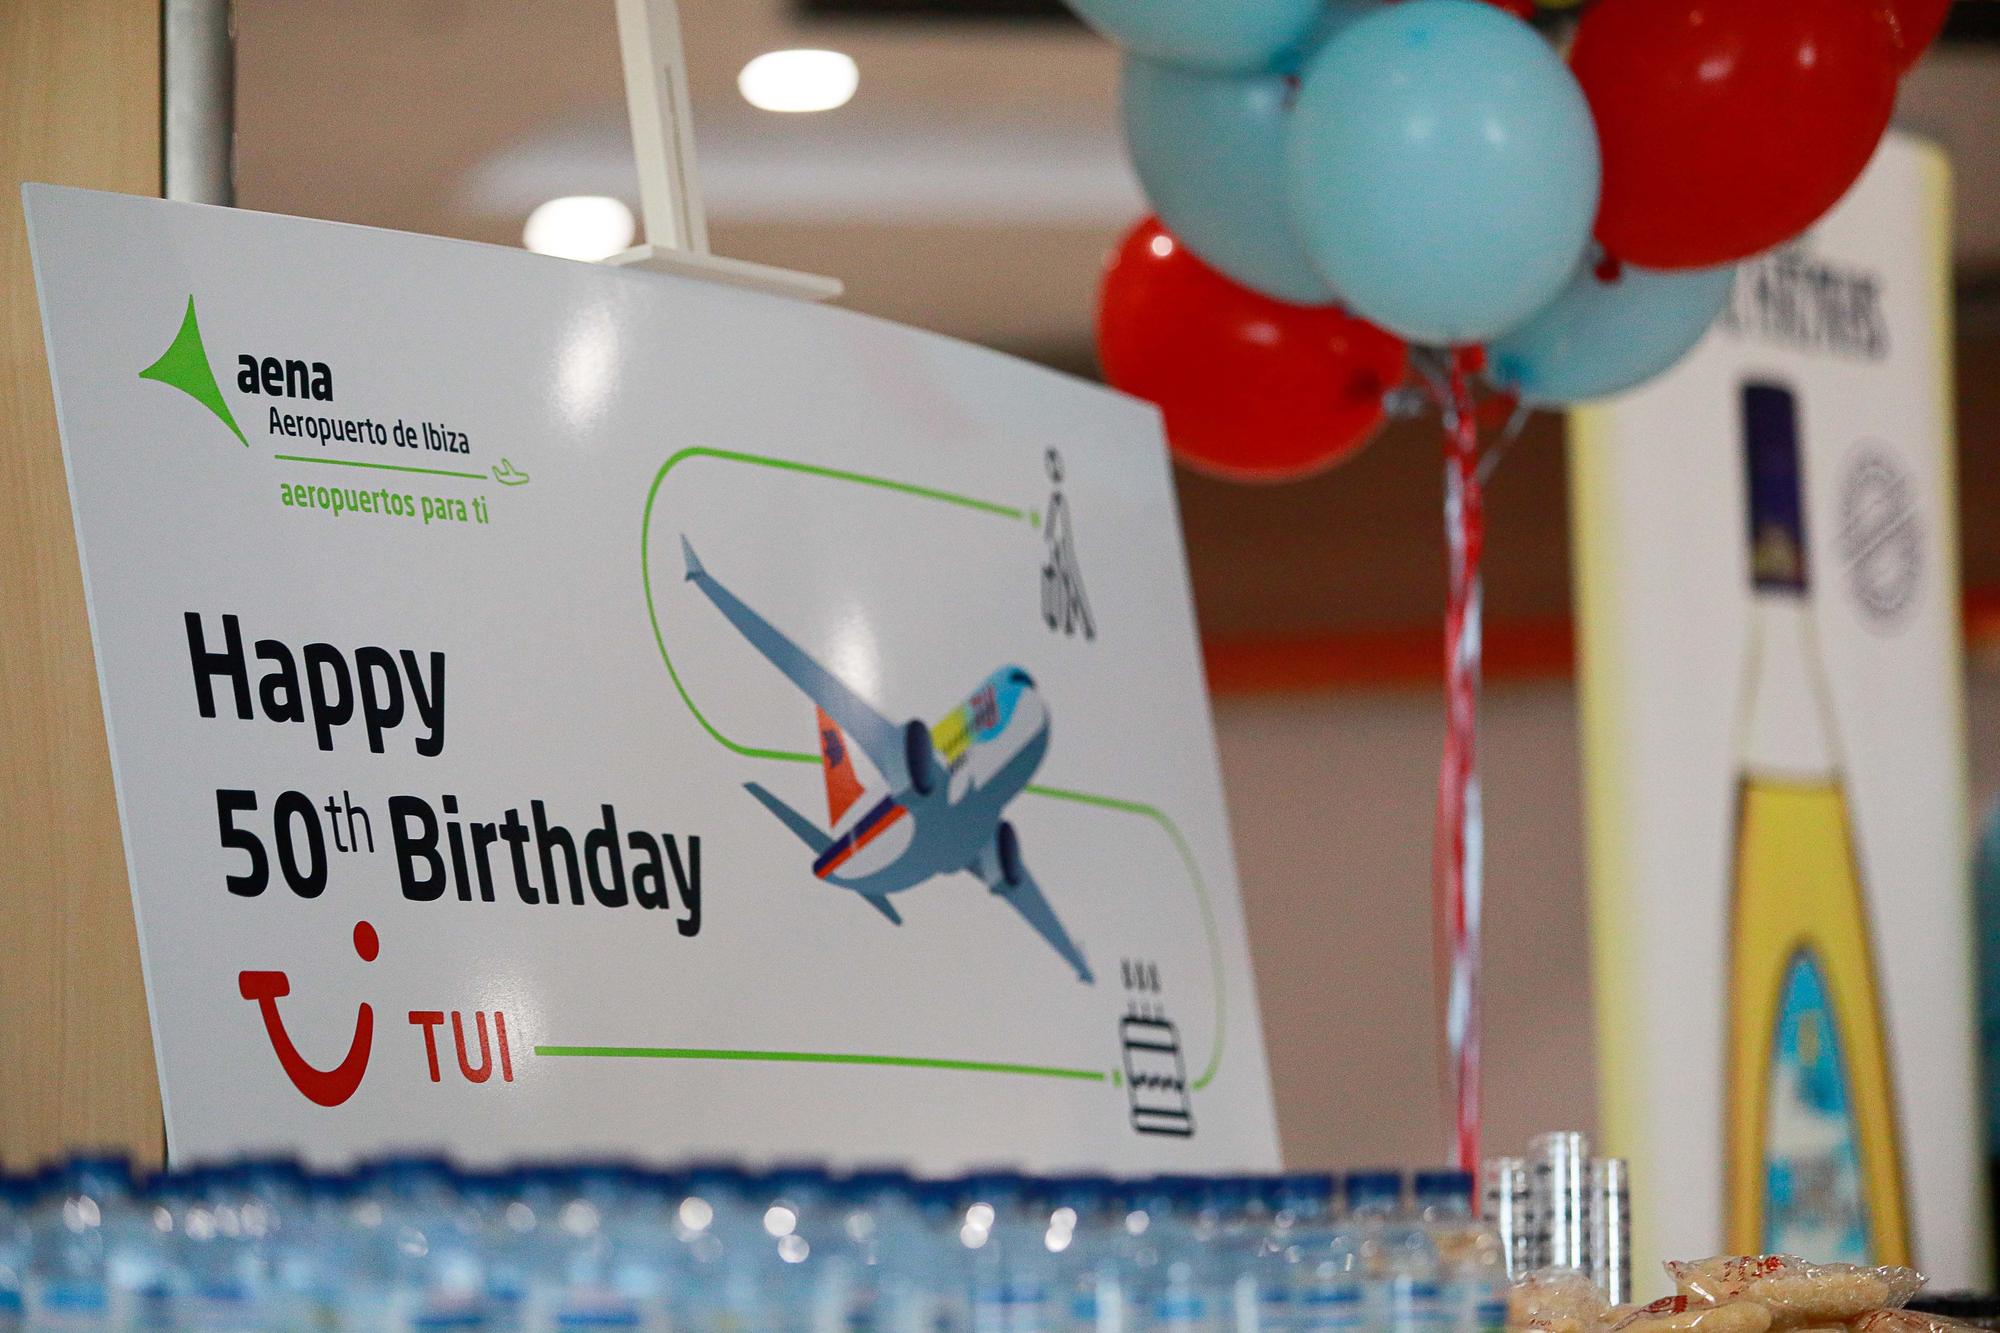 Galería de imágenes del 50 aniversario de TUI en el aeropuerto de Ibiza